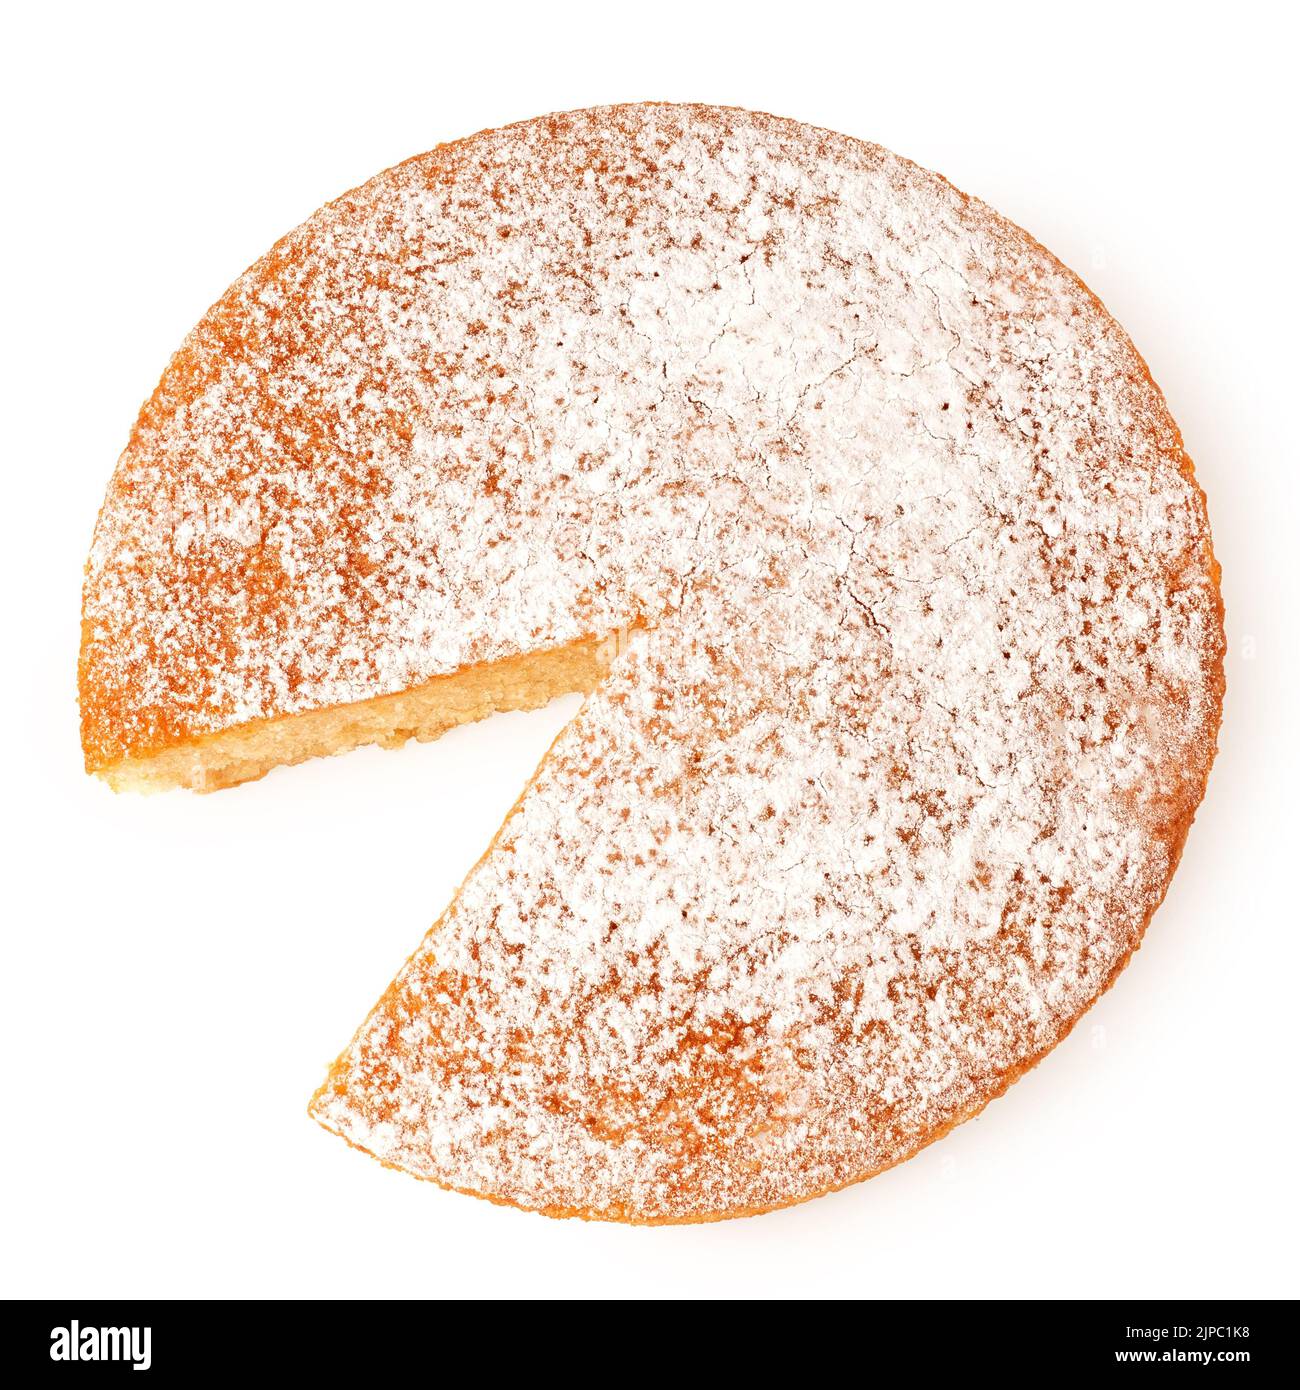 Gâteau au citron avec garniture de sucre glace et coin manquant isolé sur blanc. Vue de dessus. Banque D'Images